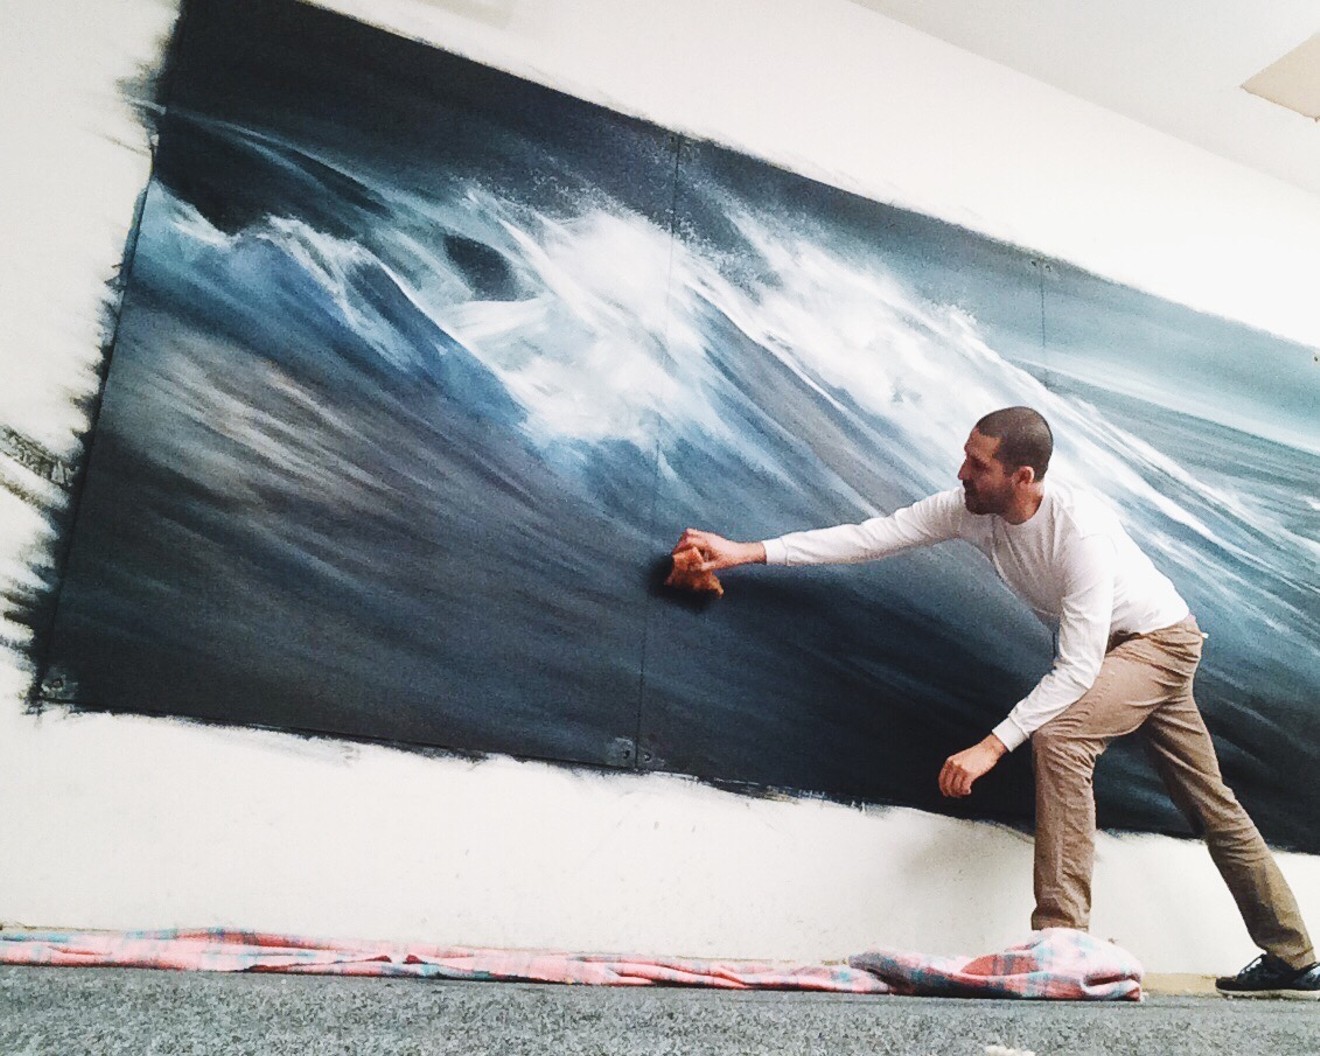 Jonathan Saiz at work on a wall mural.